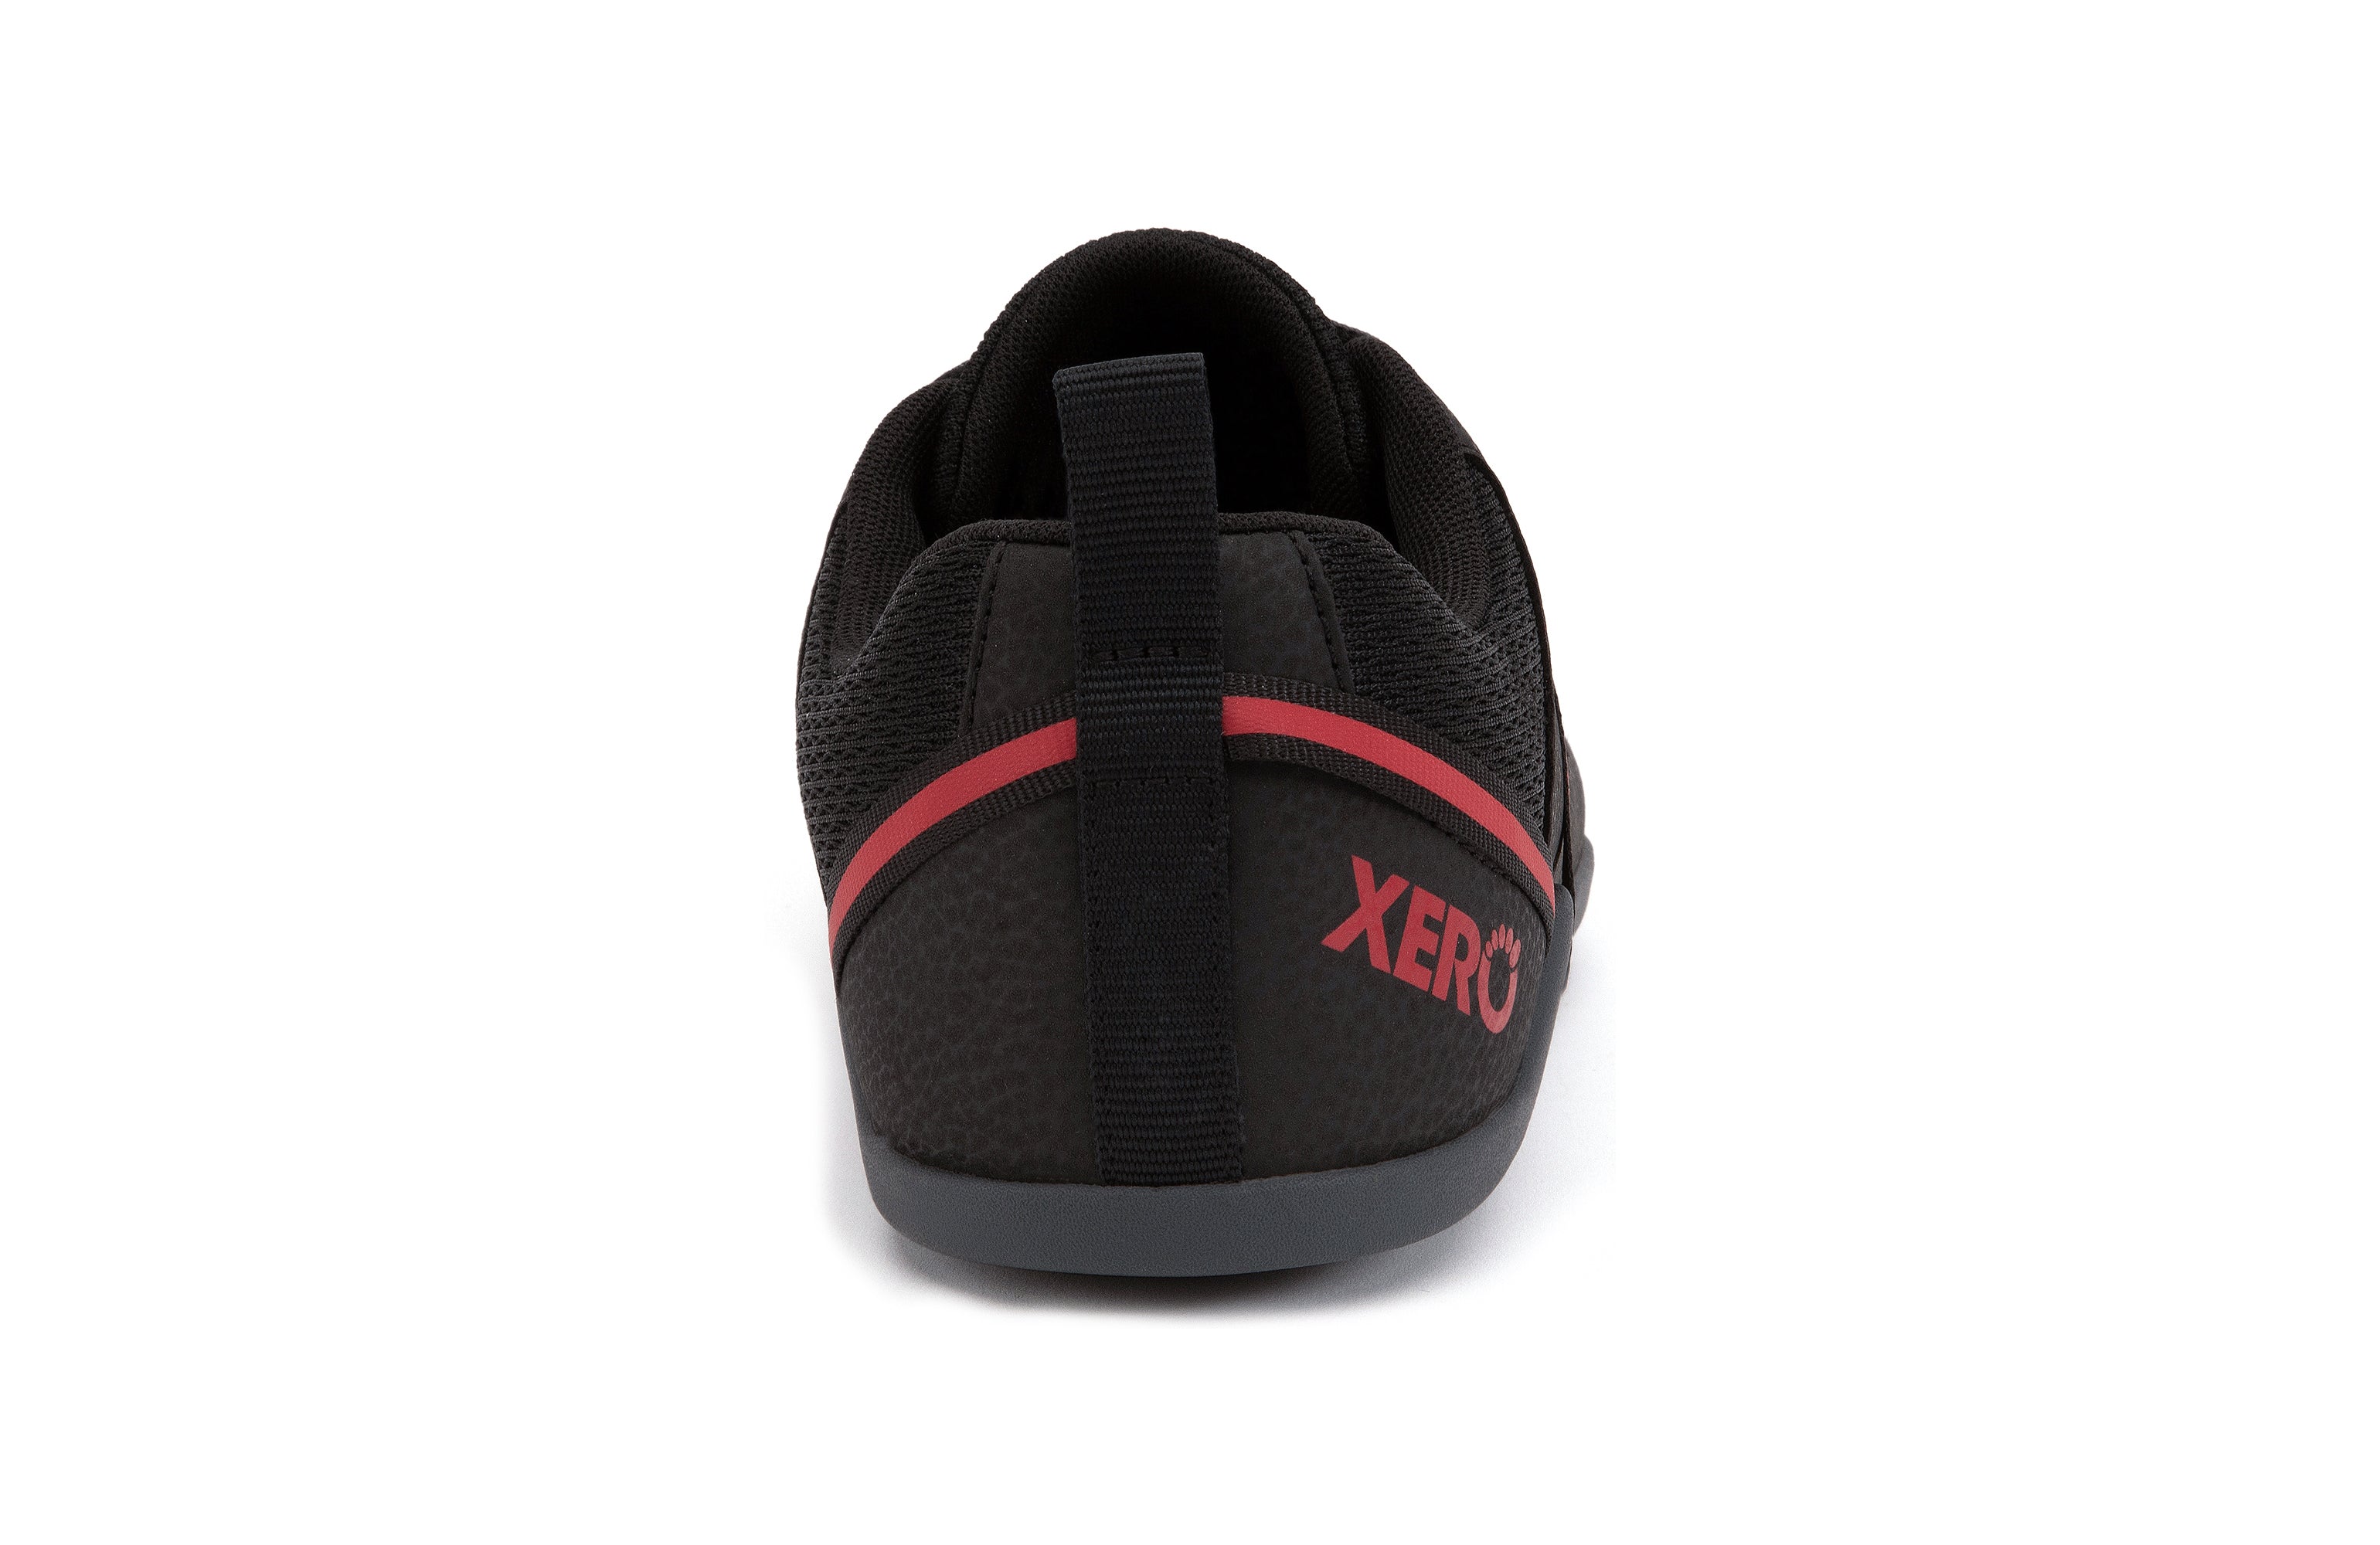 Xero Shoes Prio barfods løbesko/træningssko til mænd i farven black / samba red, bagfra